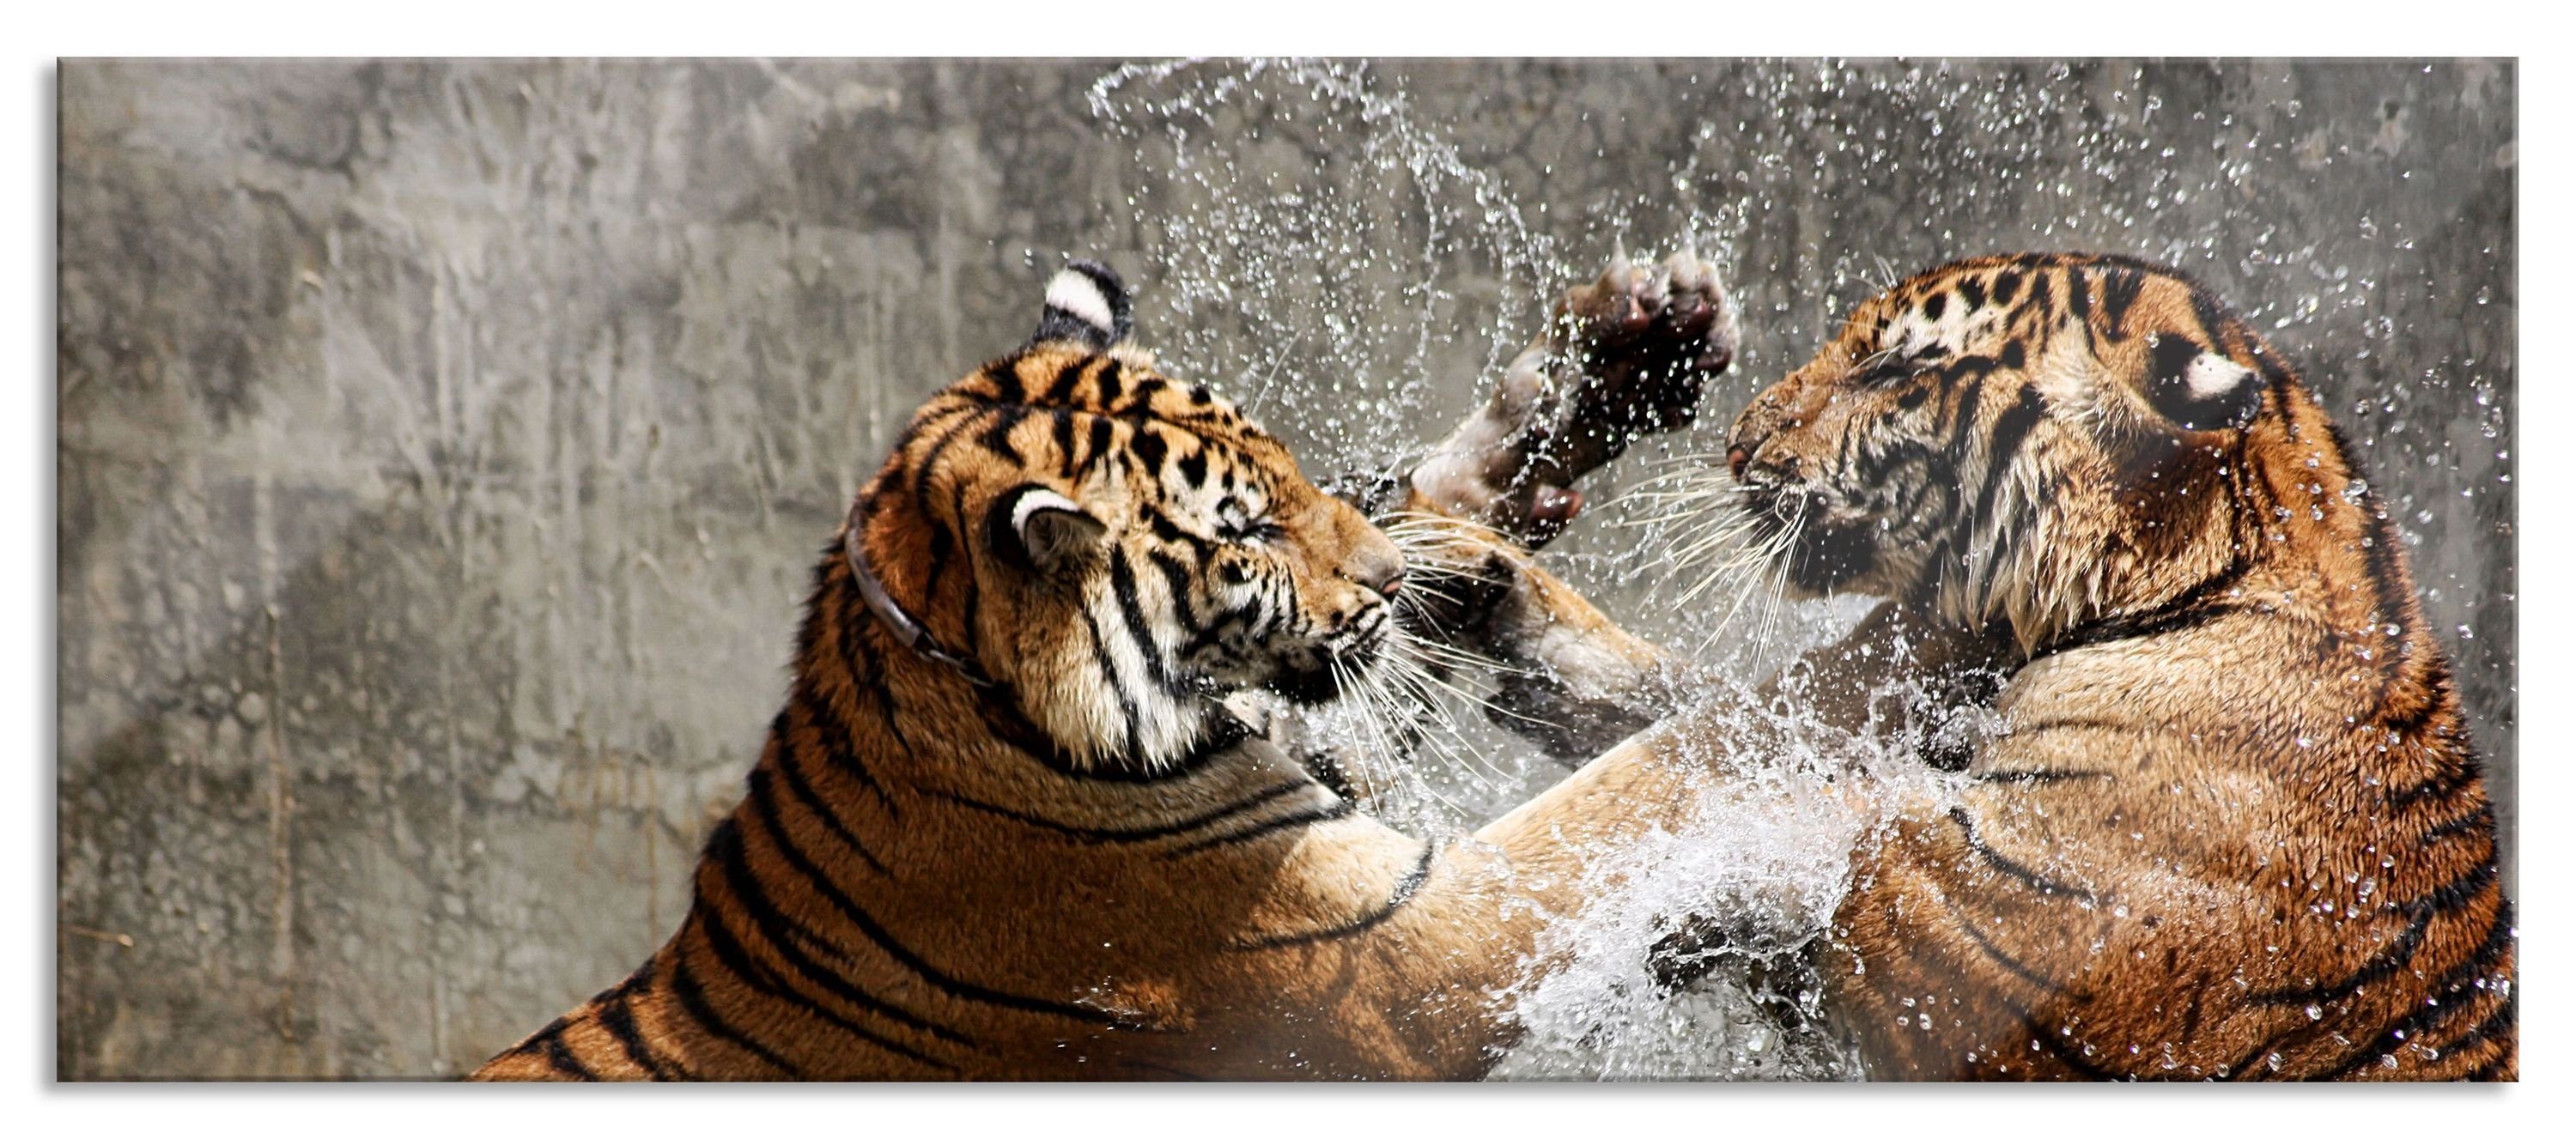 Pixxprint Glasbild Kämpfende Tiger im Wasser, Kämpfende Tiger im Wasser (1 St), Glasbild aus Echtglas, inkl. Aufhängungen und Abstandshalter